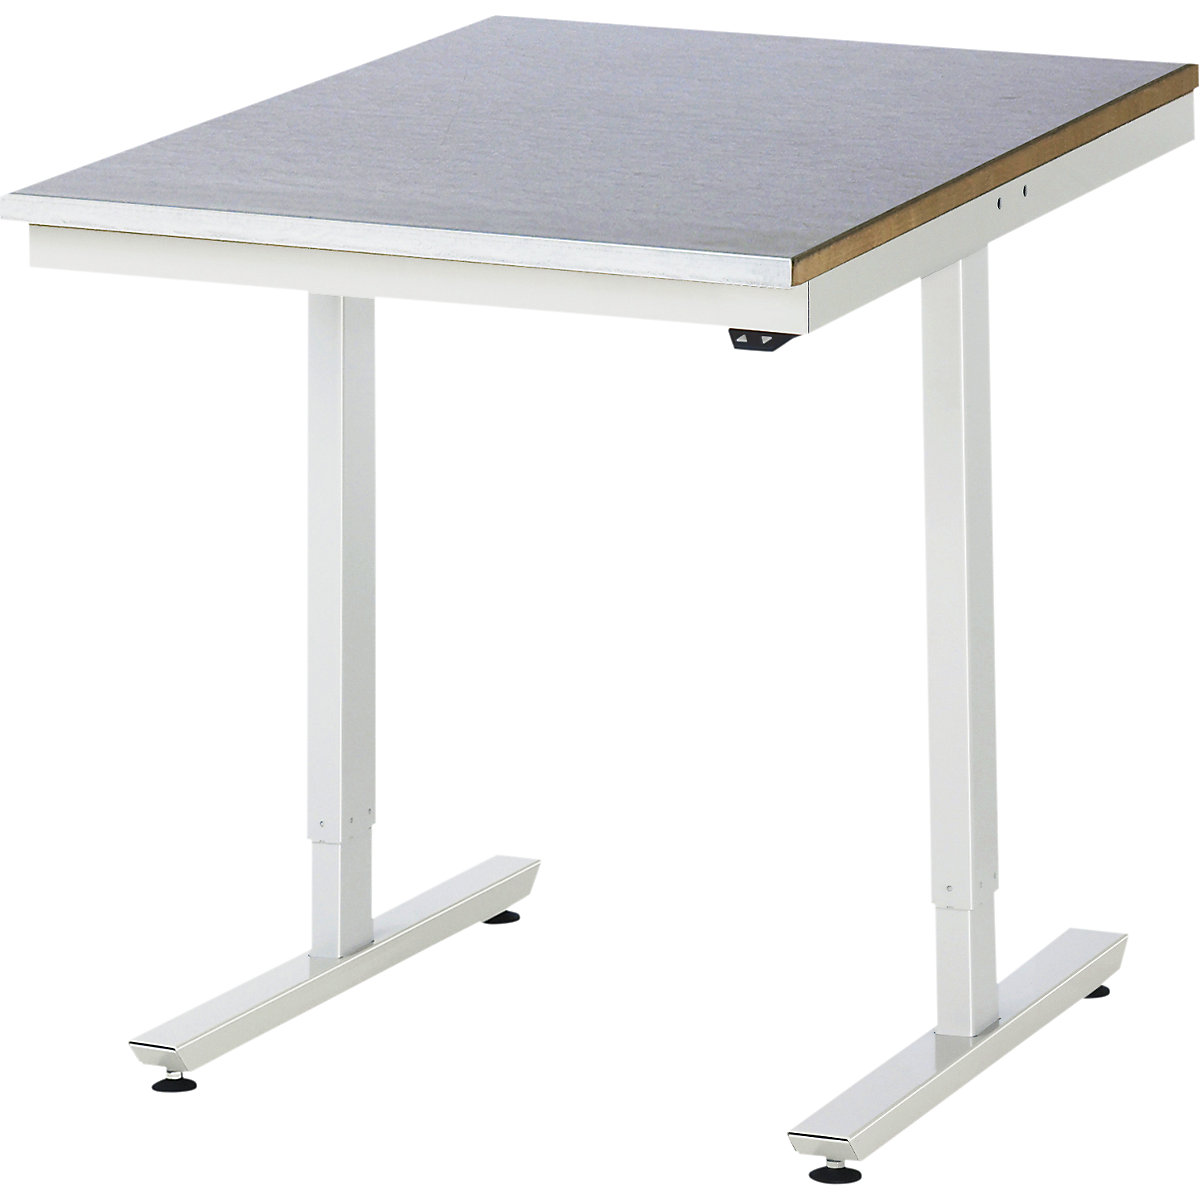 Psací stůl s elektrickým přestavováním výšky – RAU, ocelový povlak, nosnost 150 kg, š x h 750 x 1000 mm-6